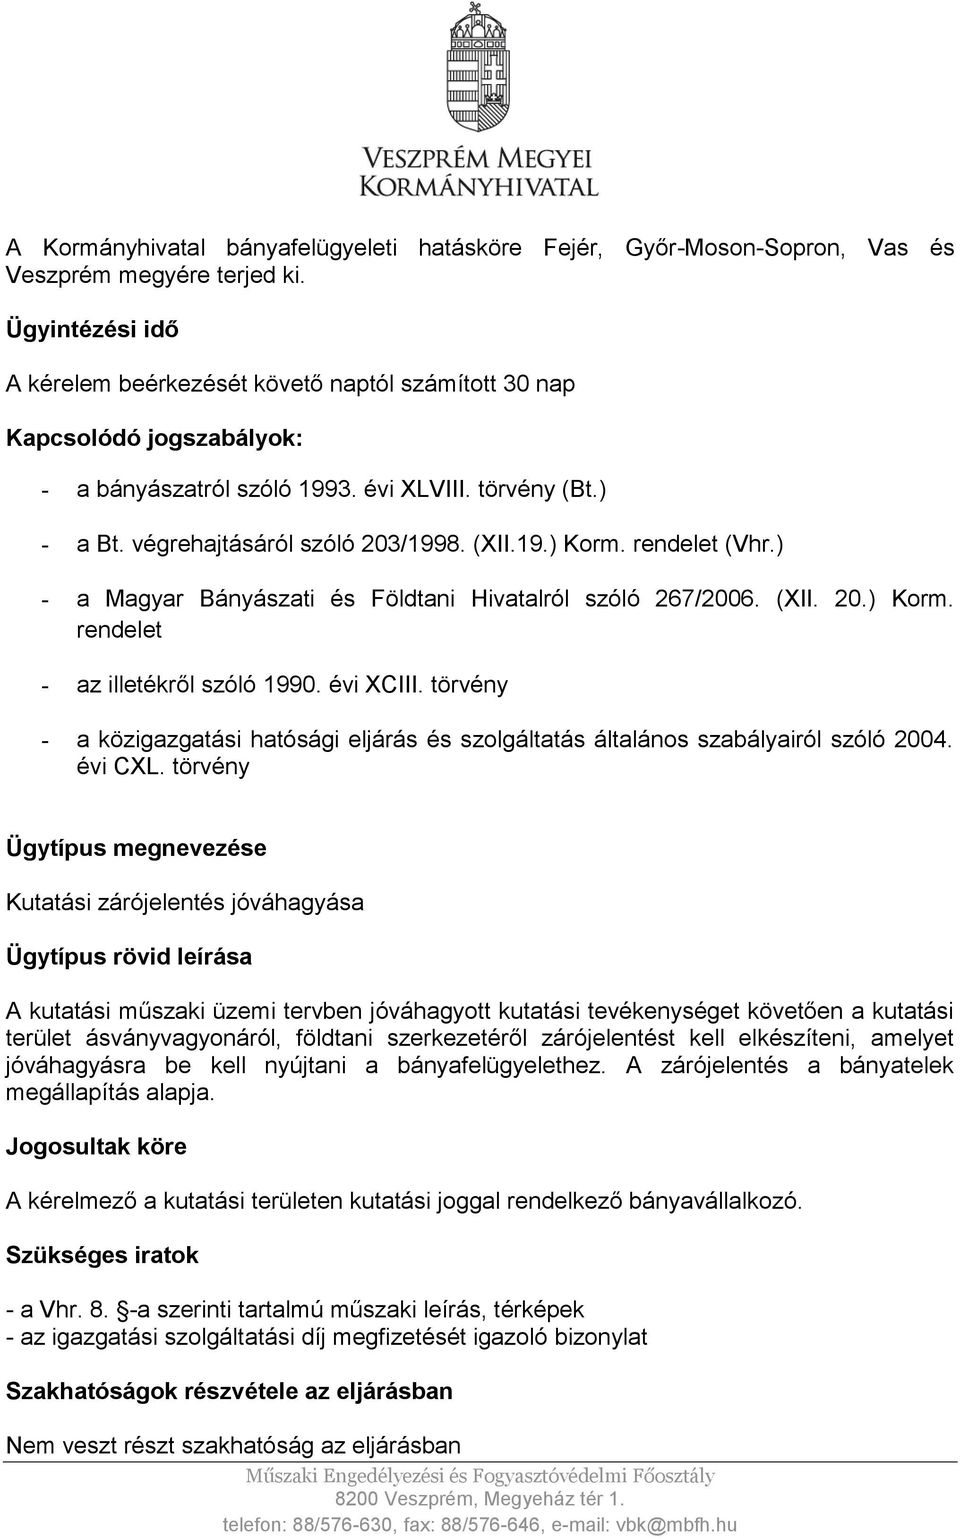 rendelet (Vhr.) - a Magyar Bányászati és Földtani Hivatalról szóló 267/2006. (XII. 20.) Korm. rendelet - az illetékről szóló 1990. évi XCIII.